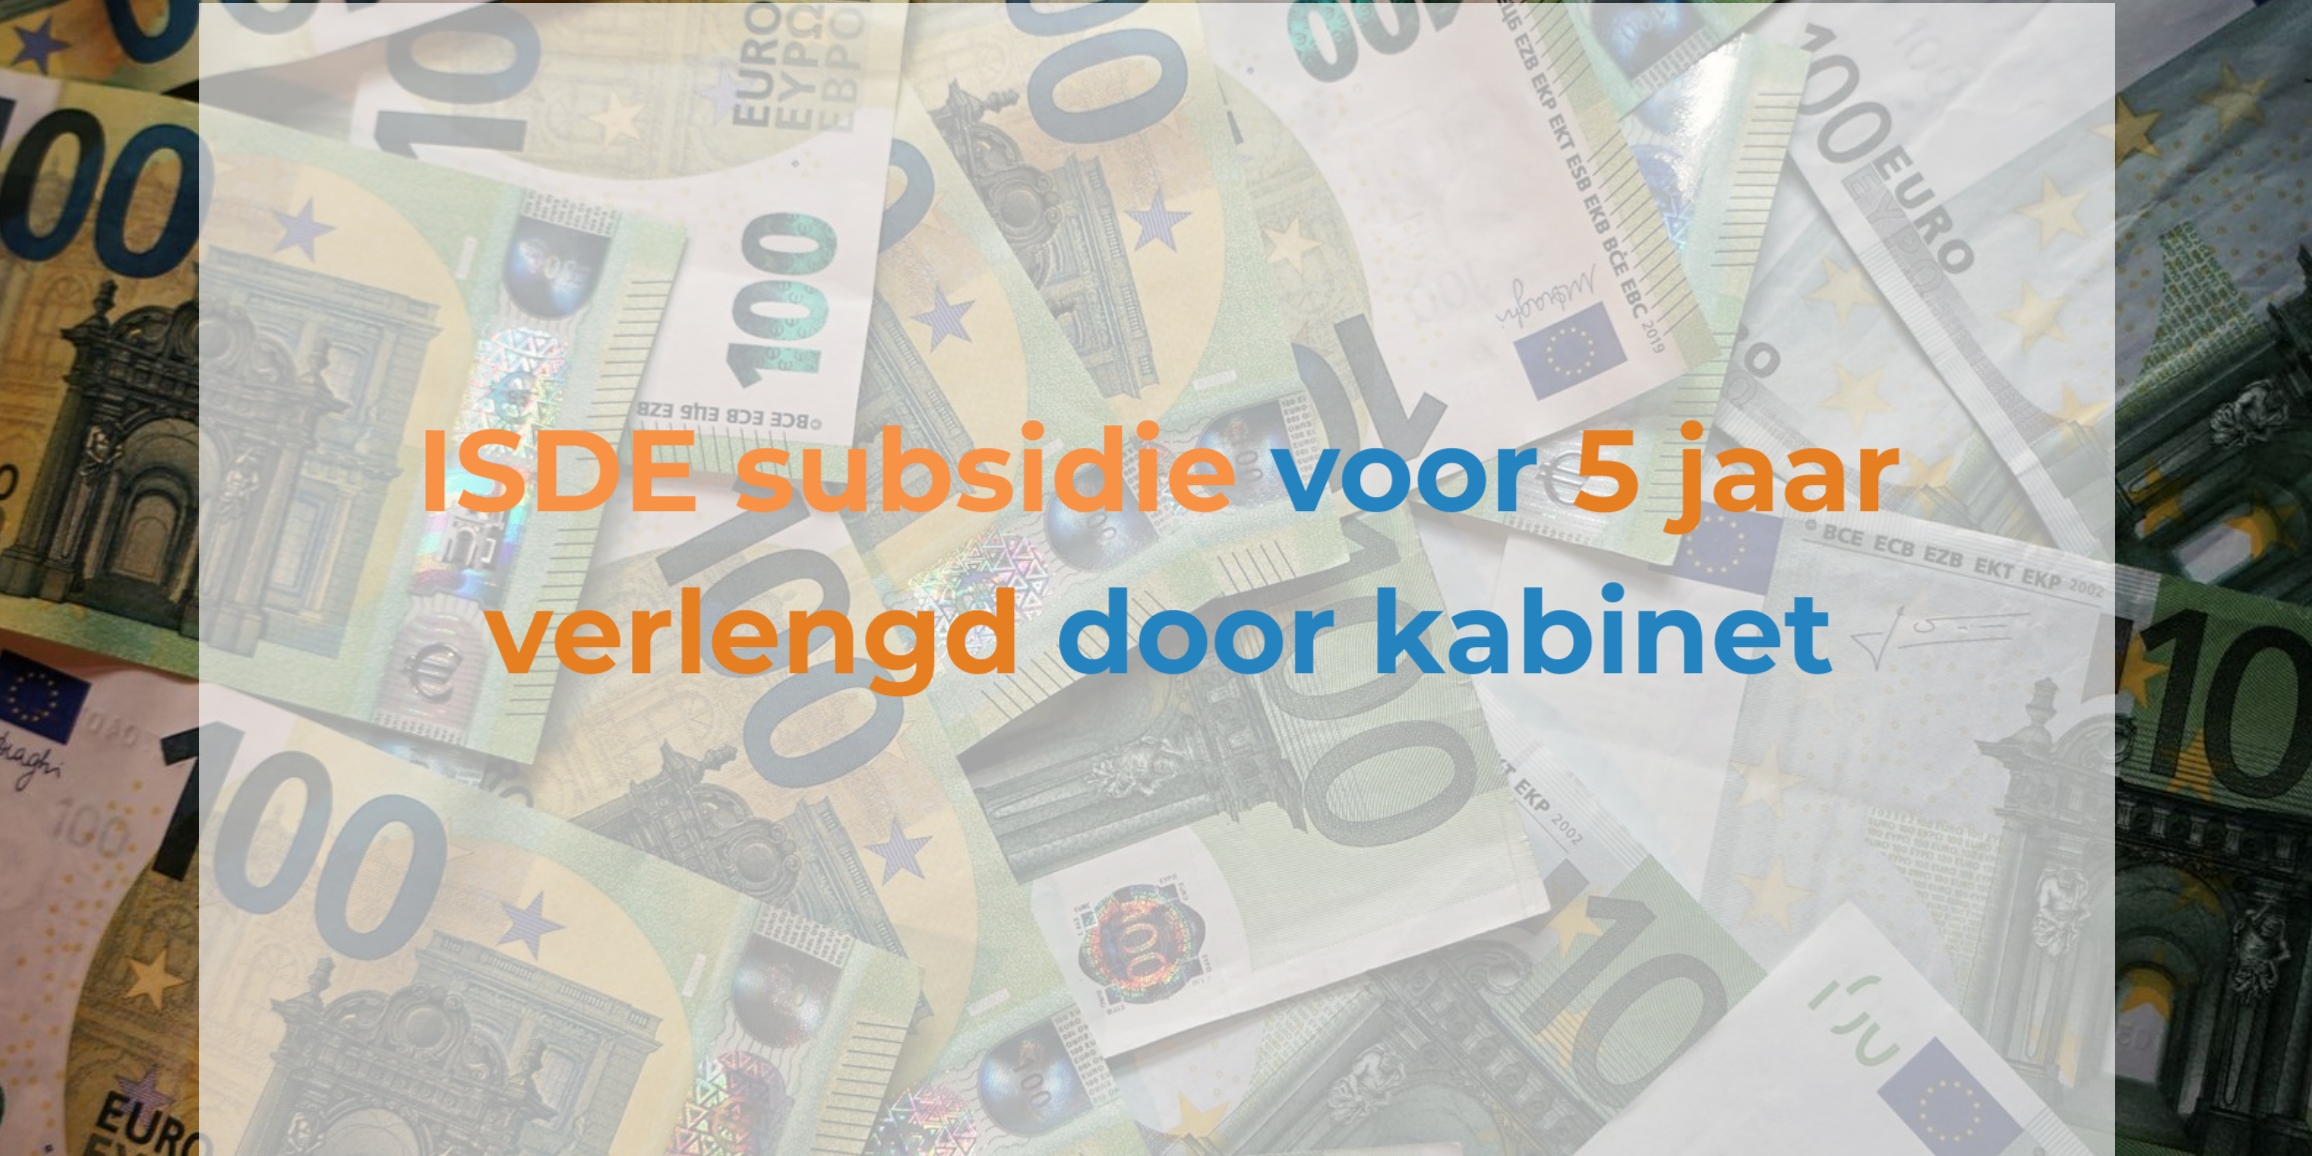 ISDE subsidie verlengd met 5 jaar door kabinet